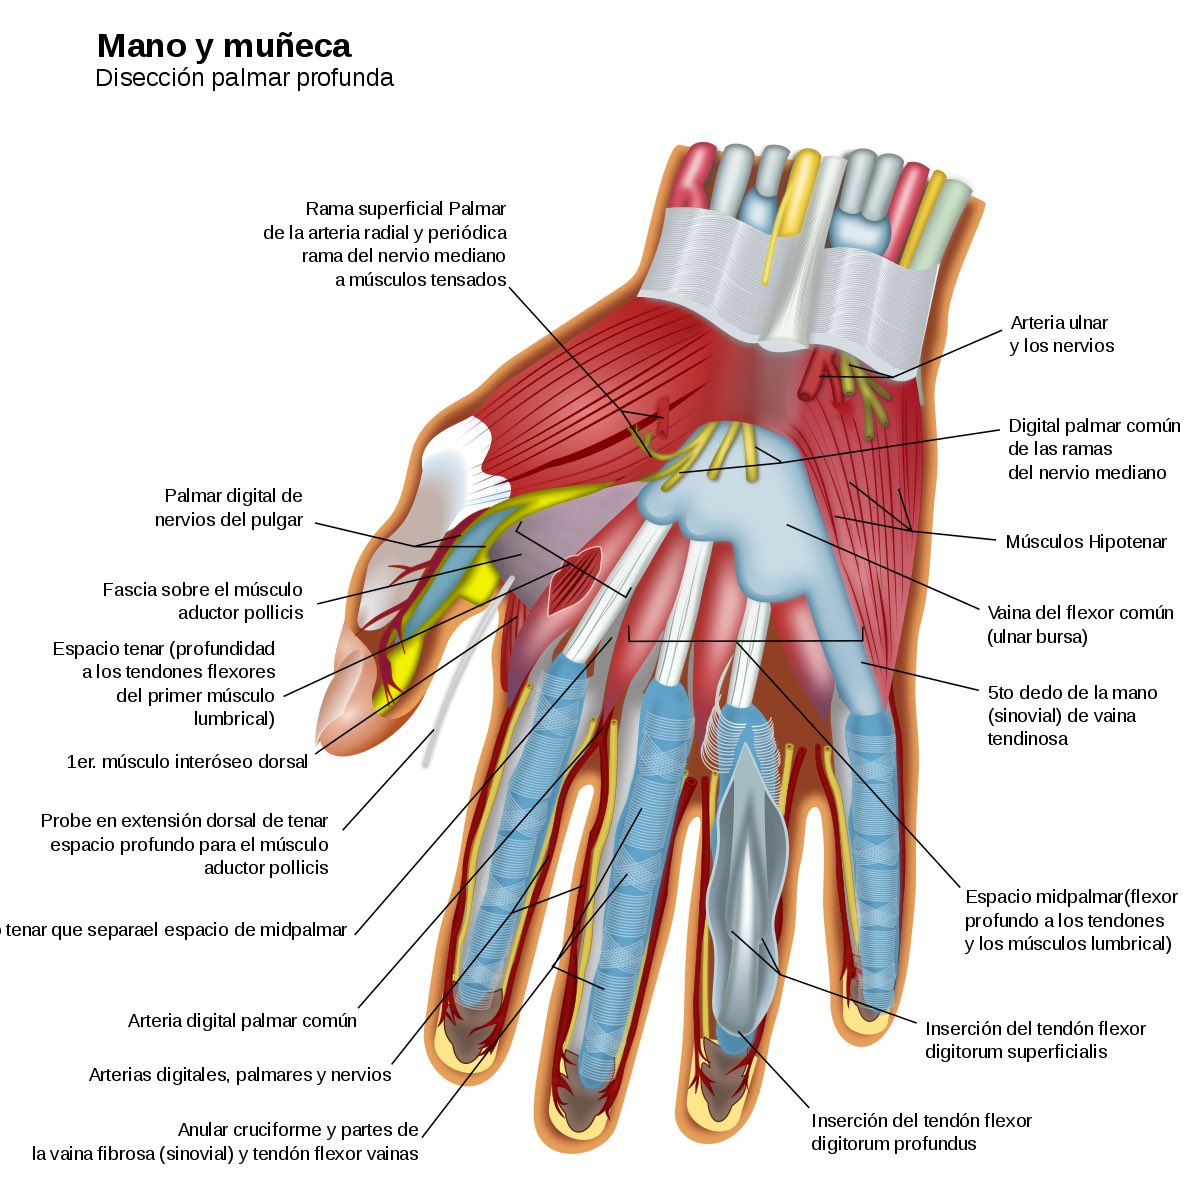 Disección anatómica palmar profunda de la mano ✋